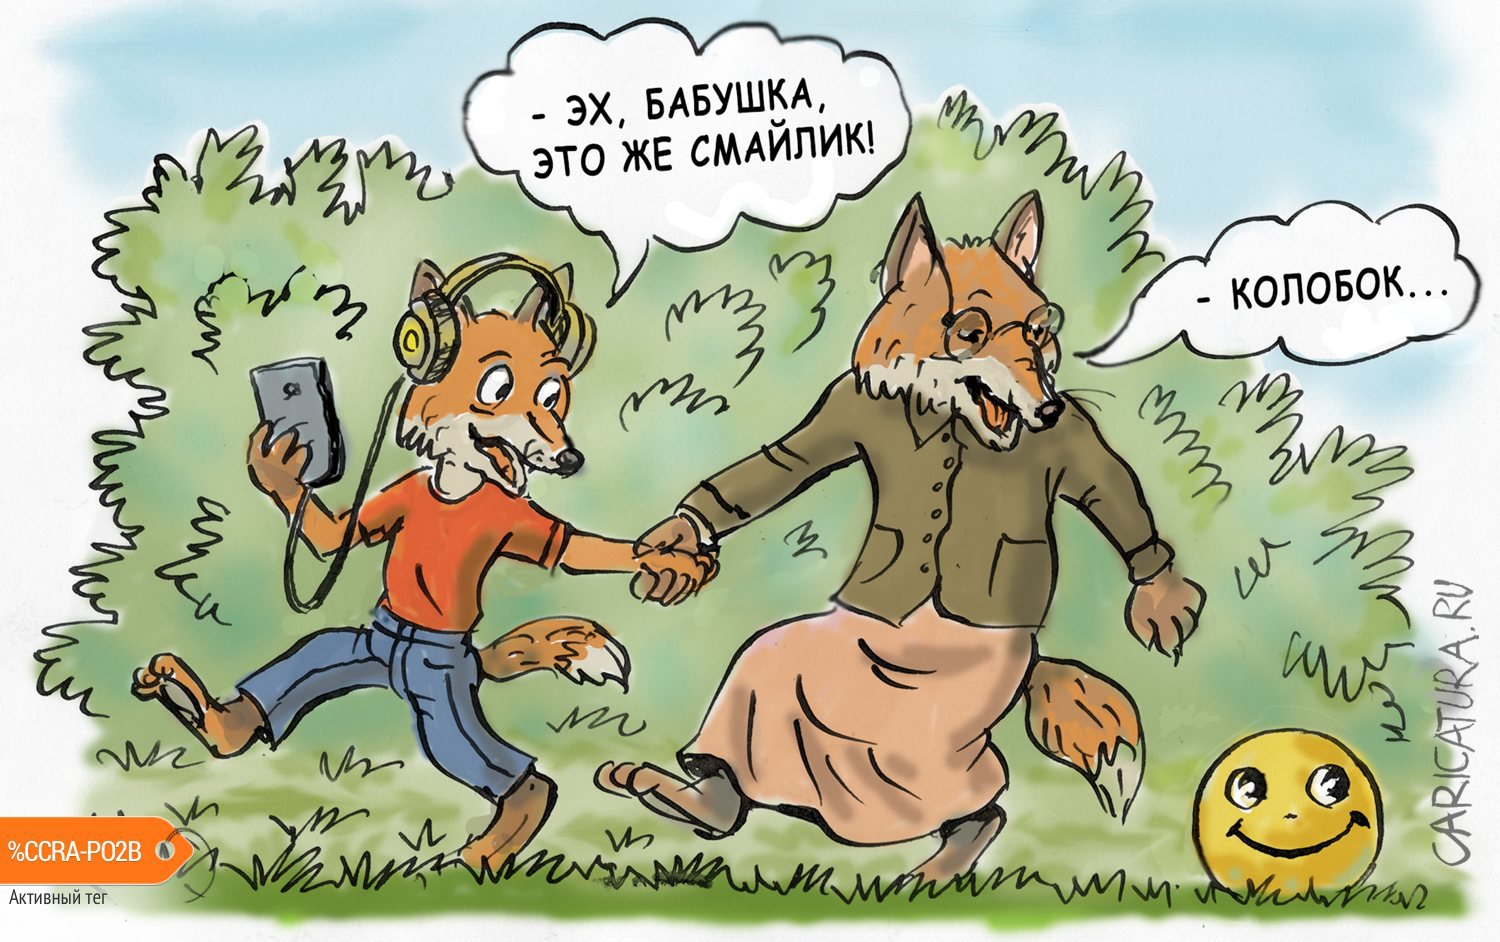 Карикатура "Эх, молодежь...", Владимир Владков